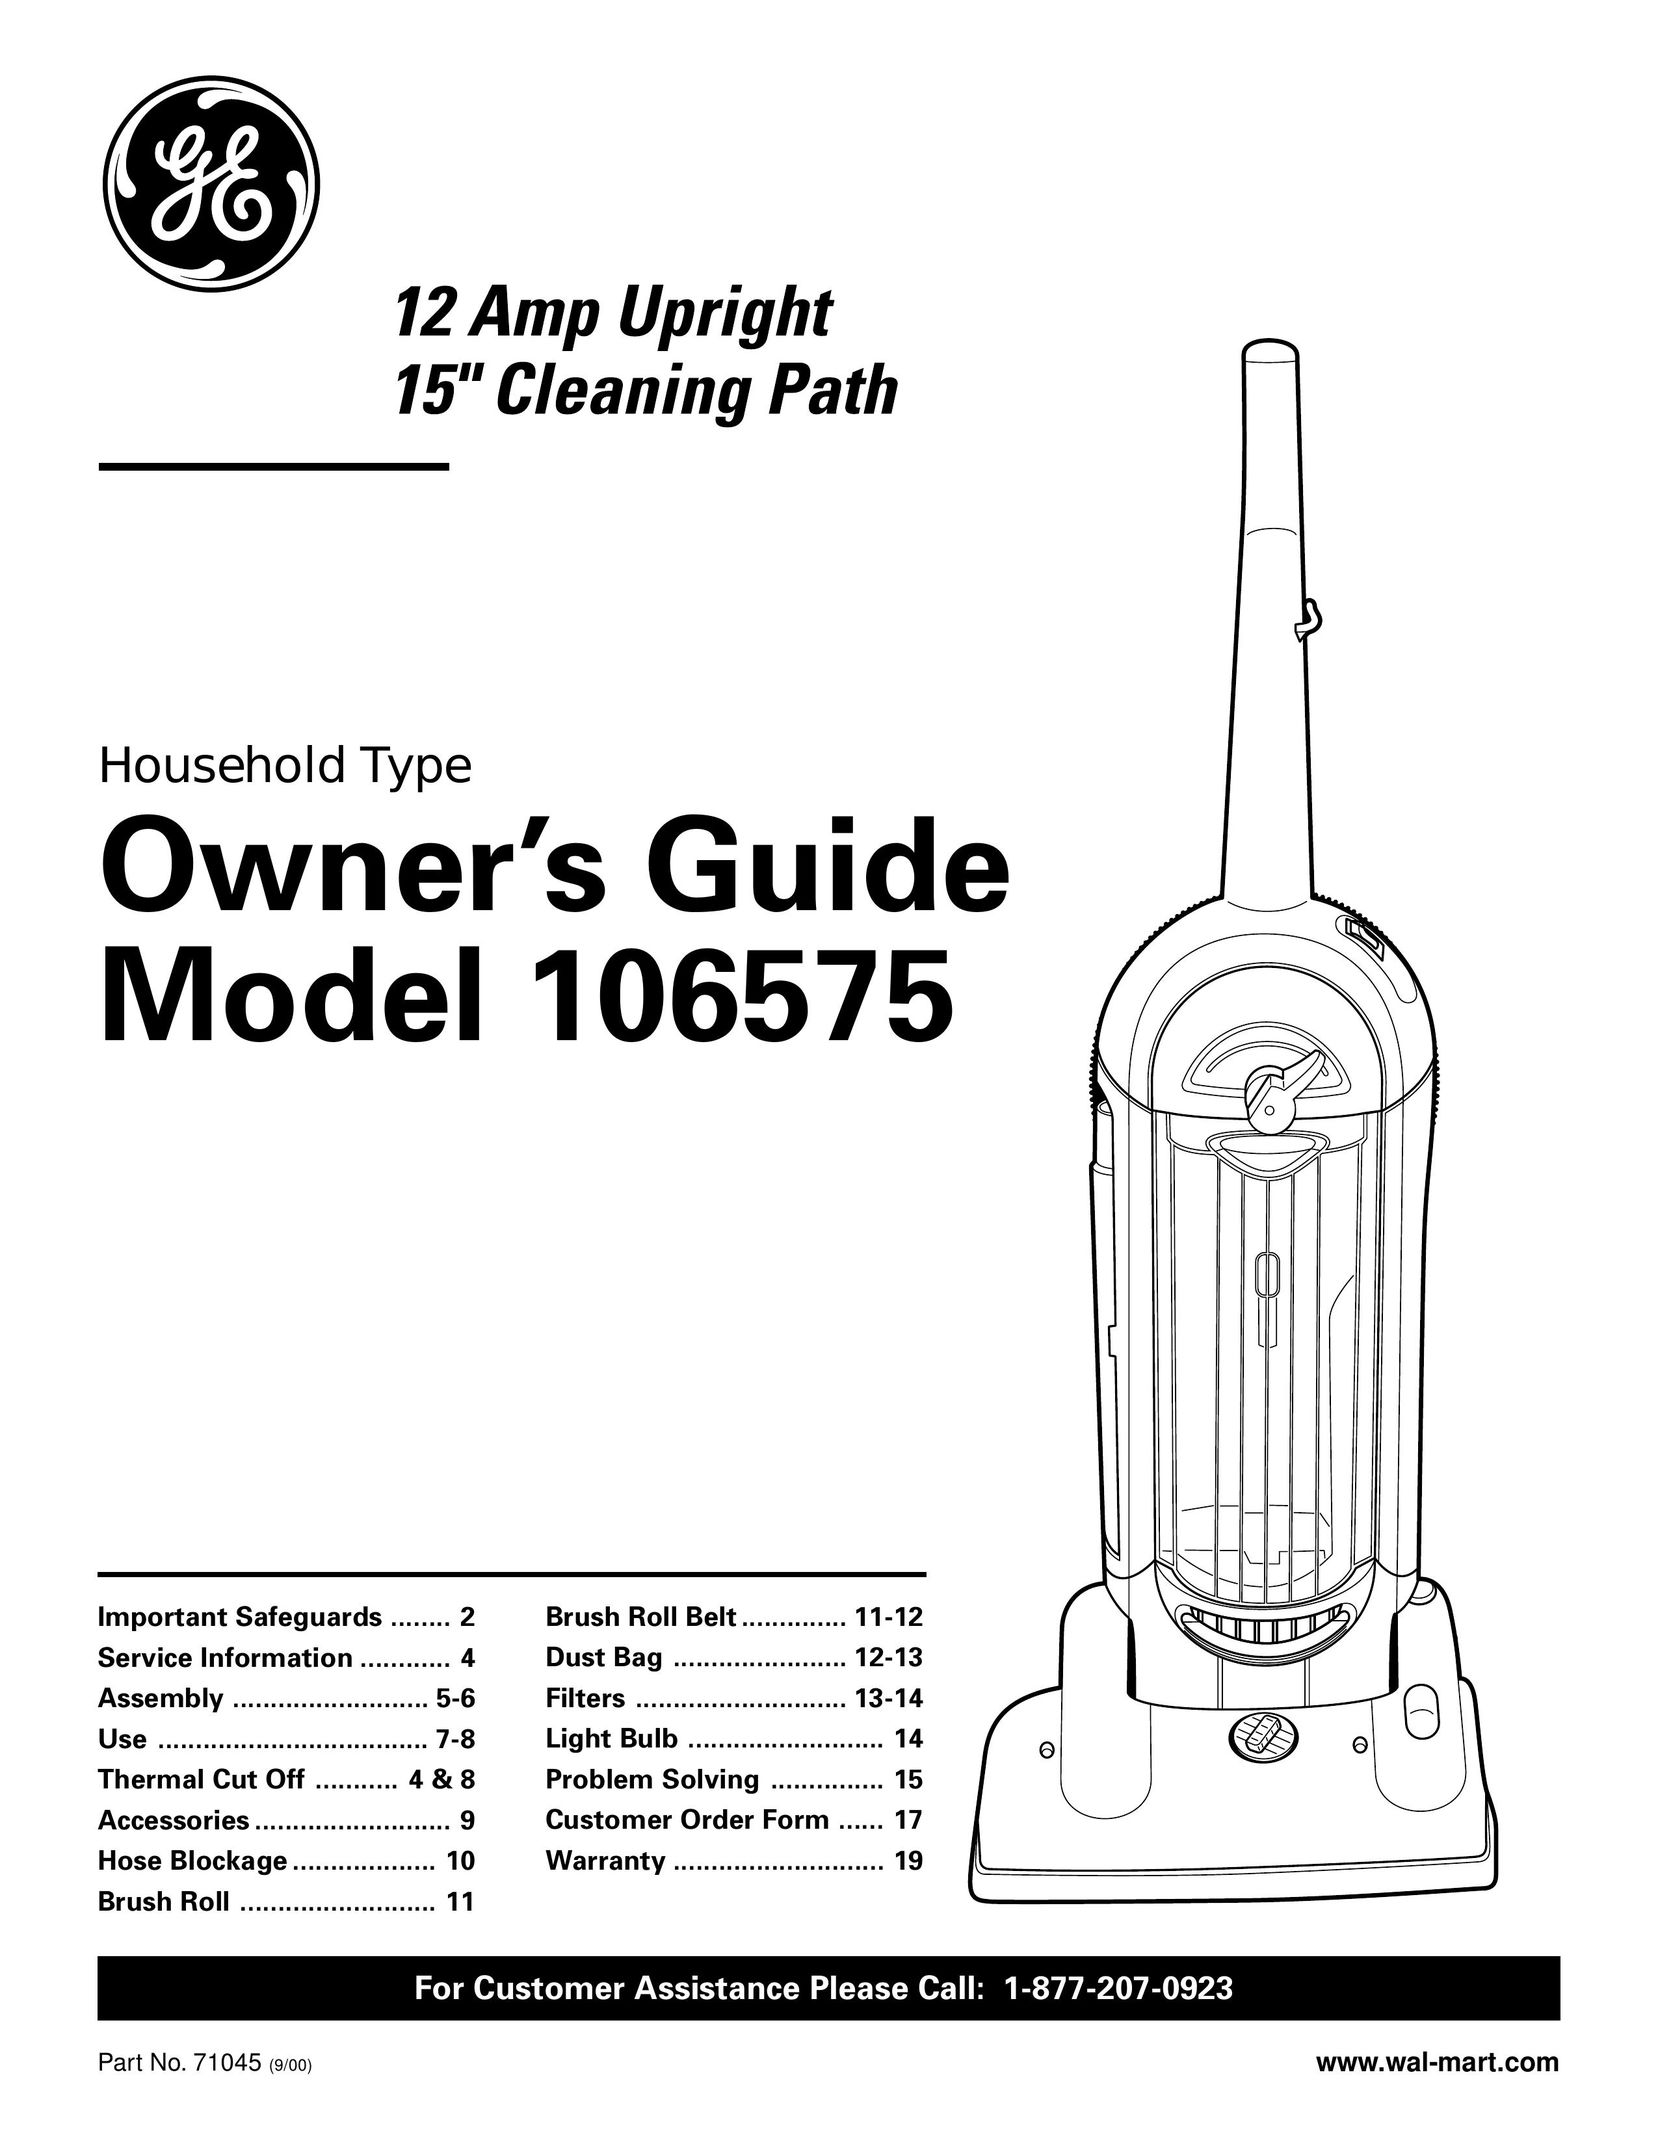 GE 106575 Vacuum Cleaner User Manual